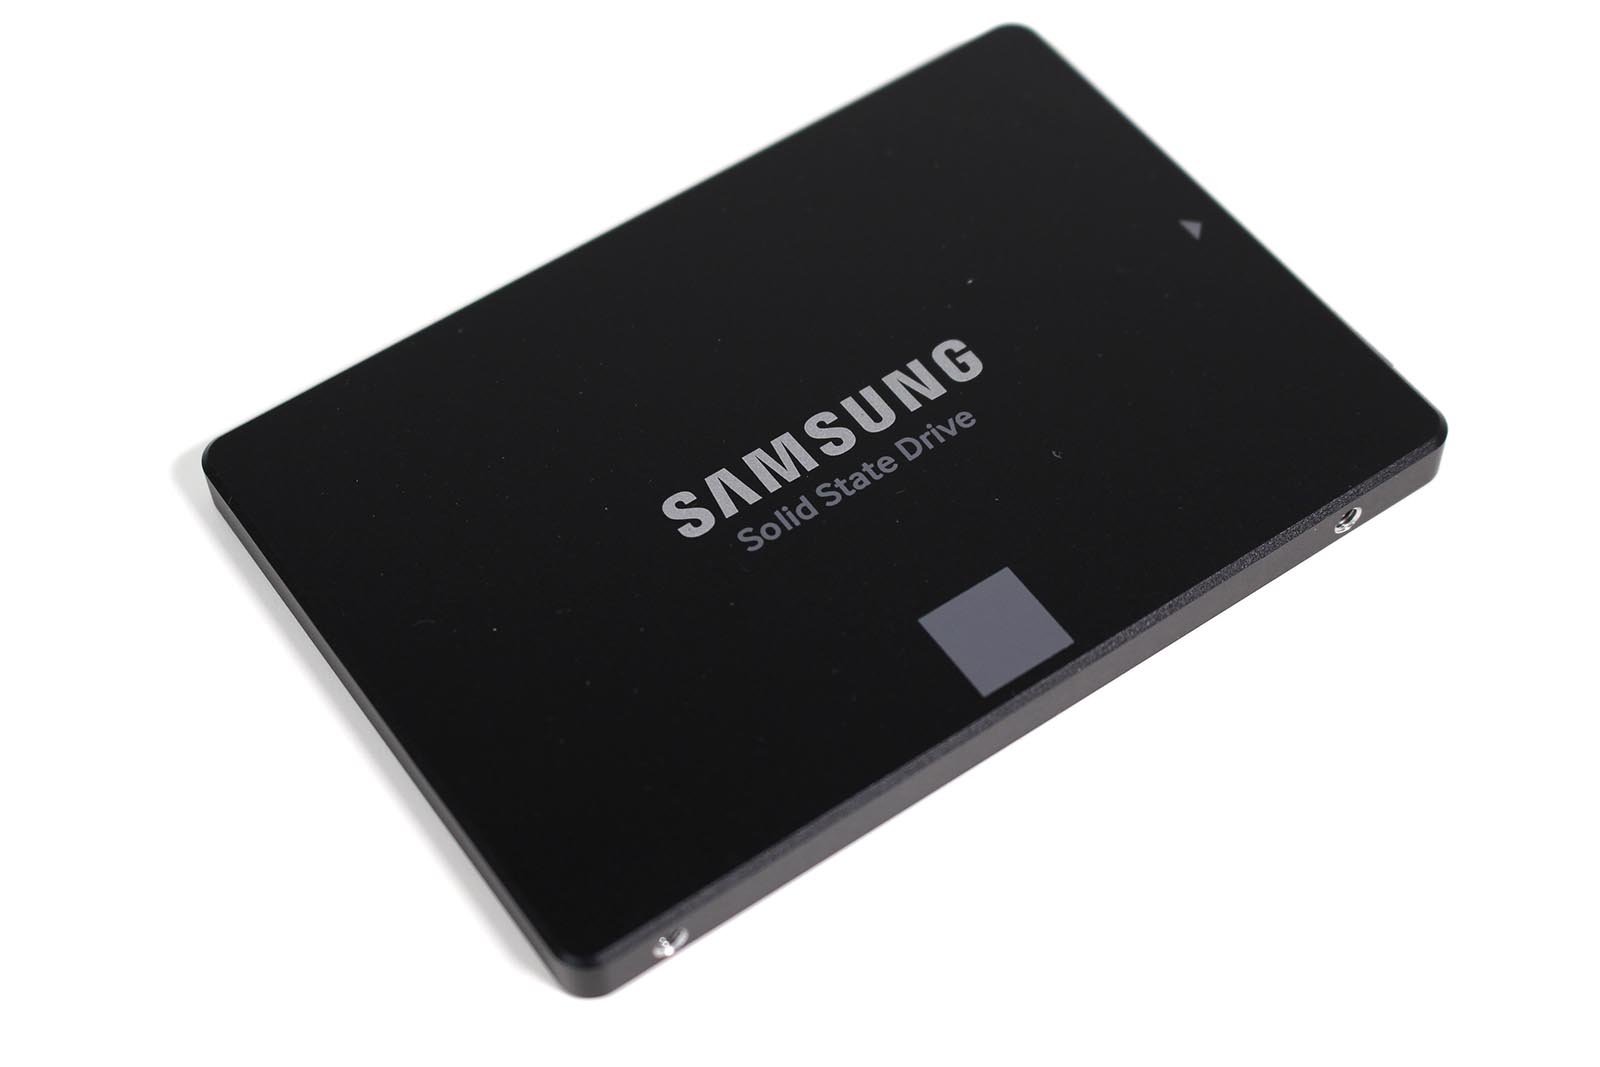 Samsung SSD 850 EVO 500 GB (VNAND Gen. 2) - Draufsicht